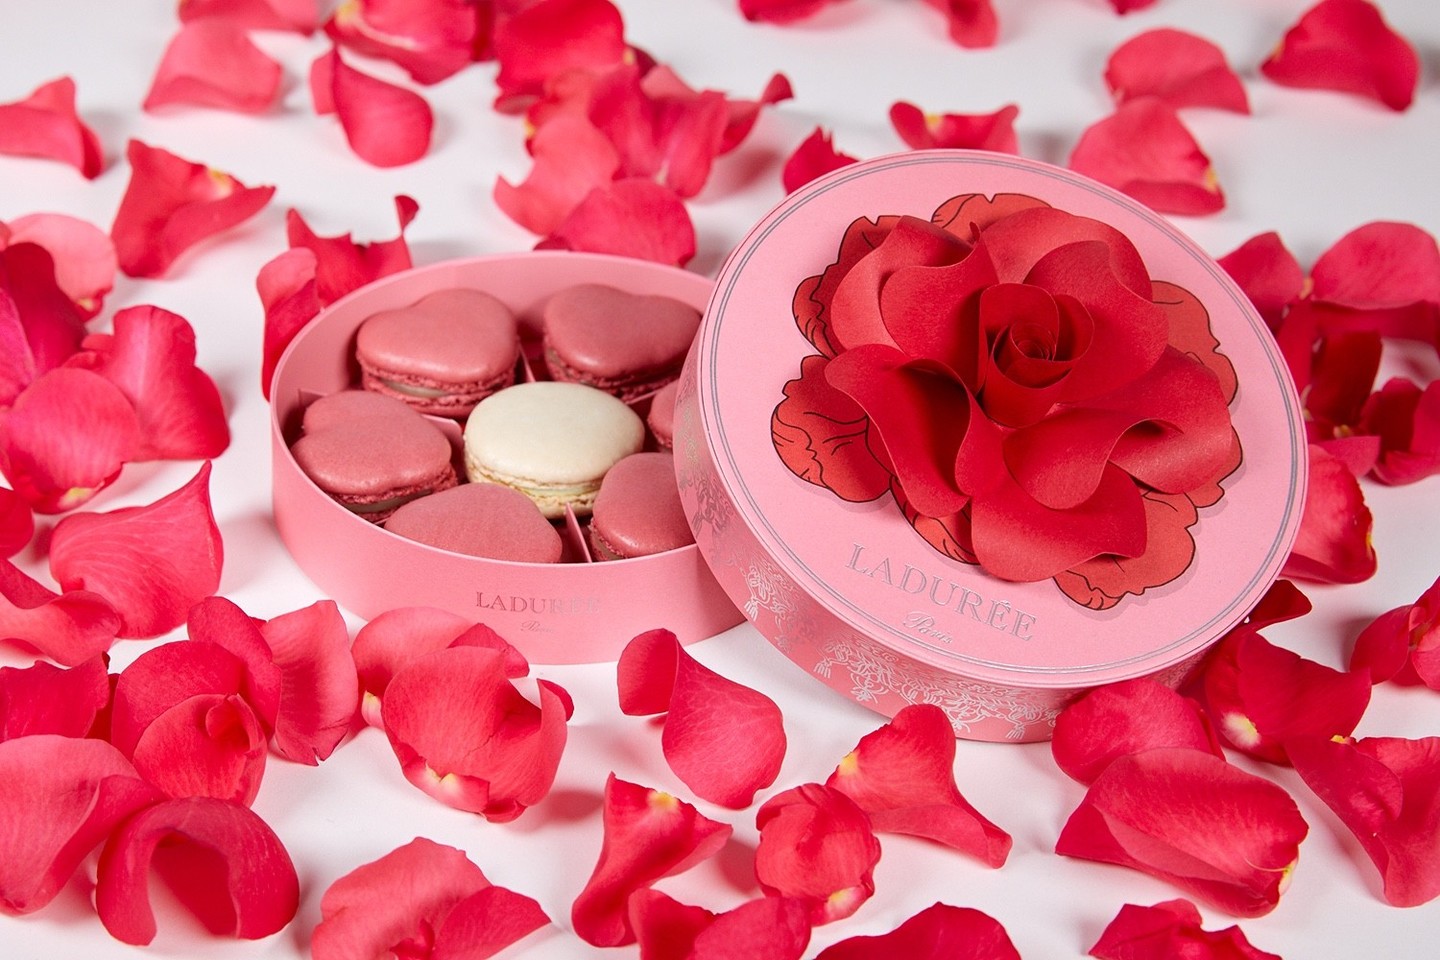 ラデュレがバレンタインコレクション発売 赤いバラの花びらが舞う限定ボックスも